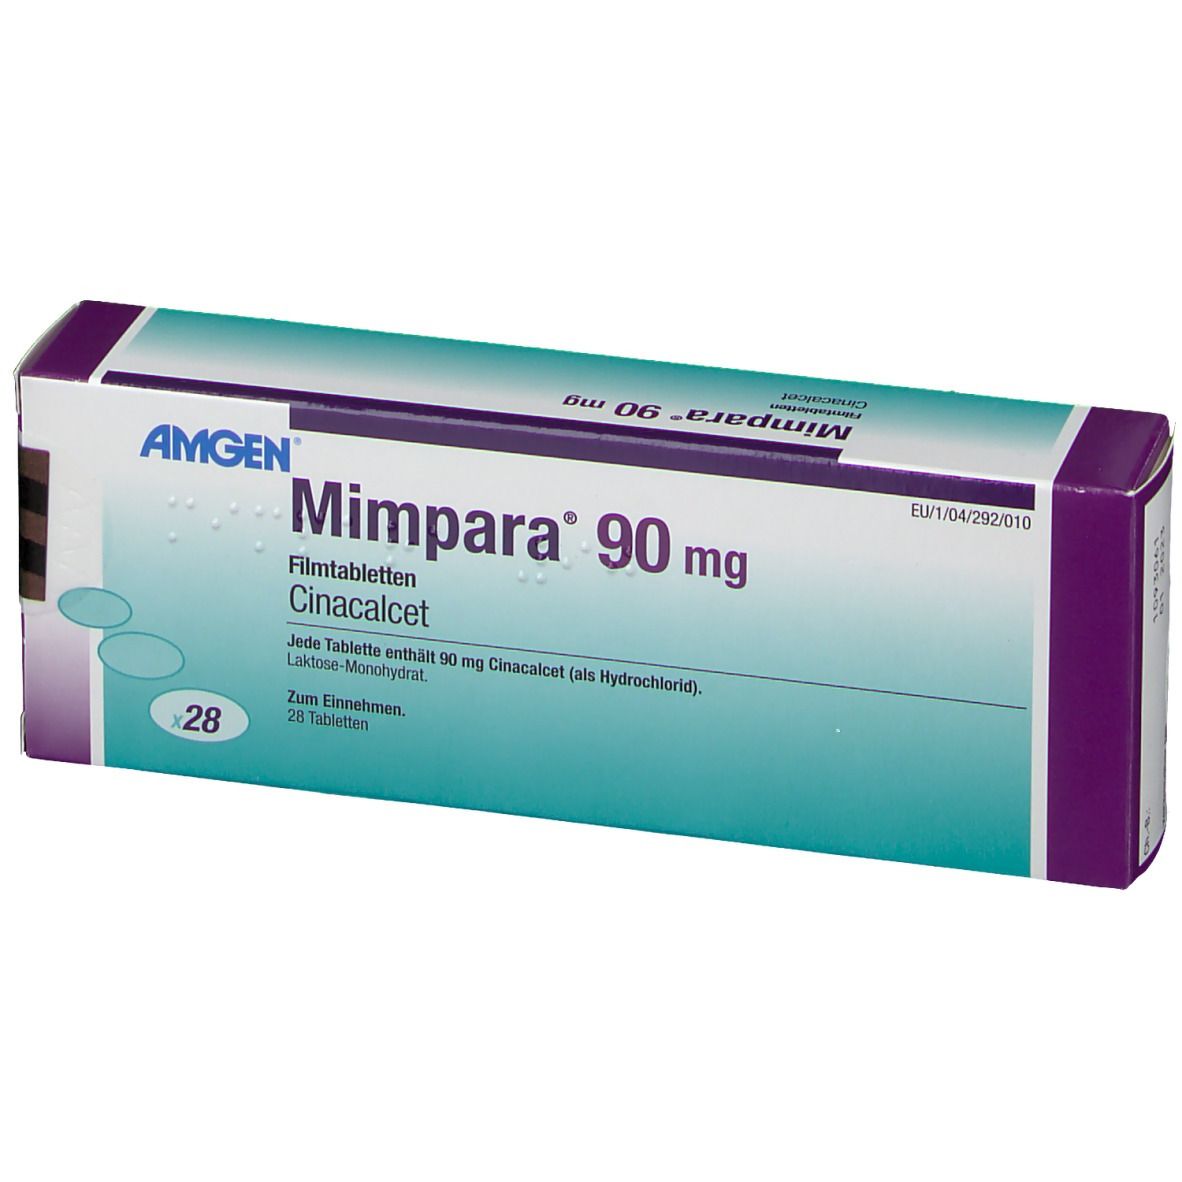 Mimpara® 90 mg